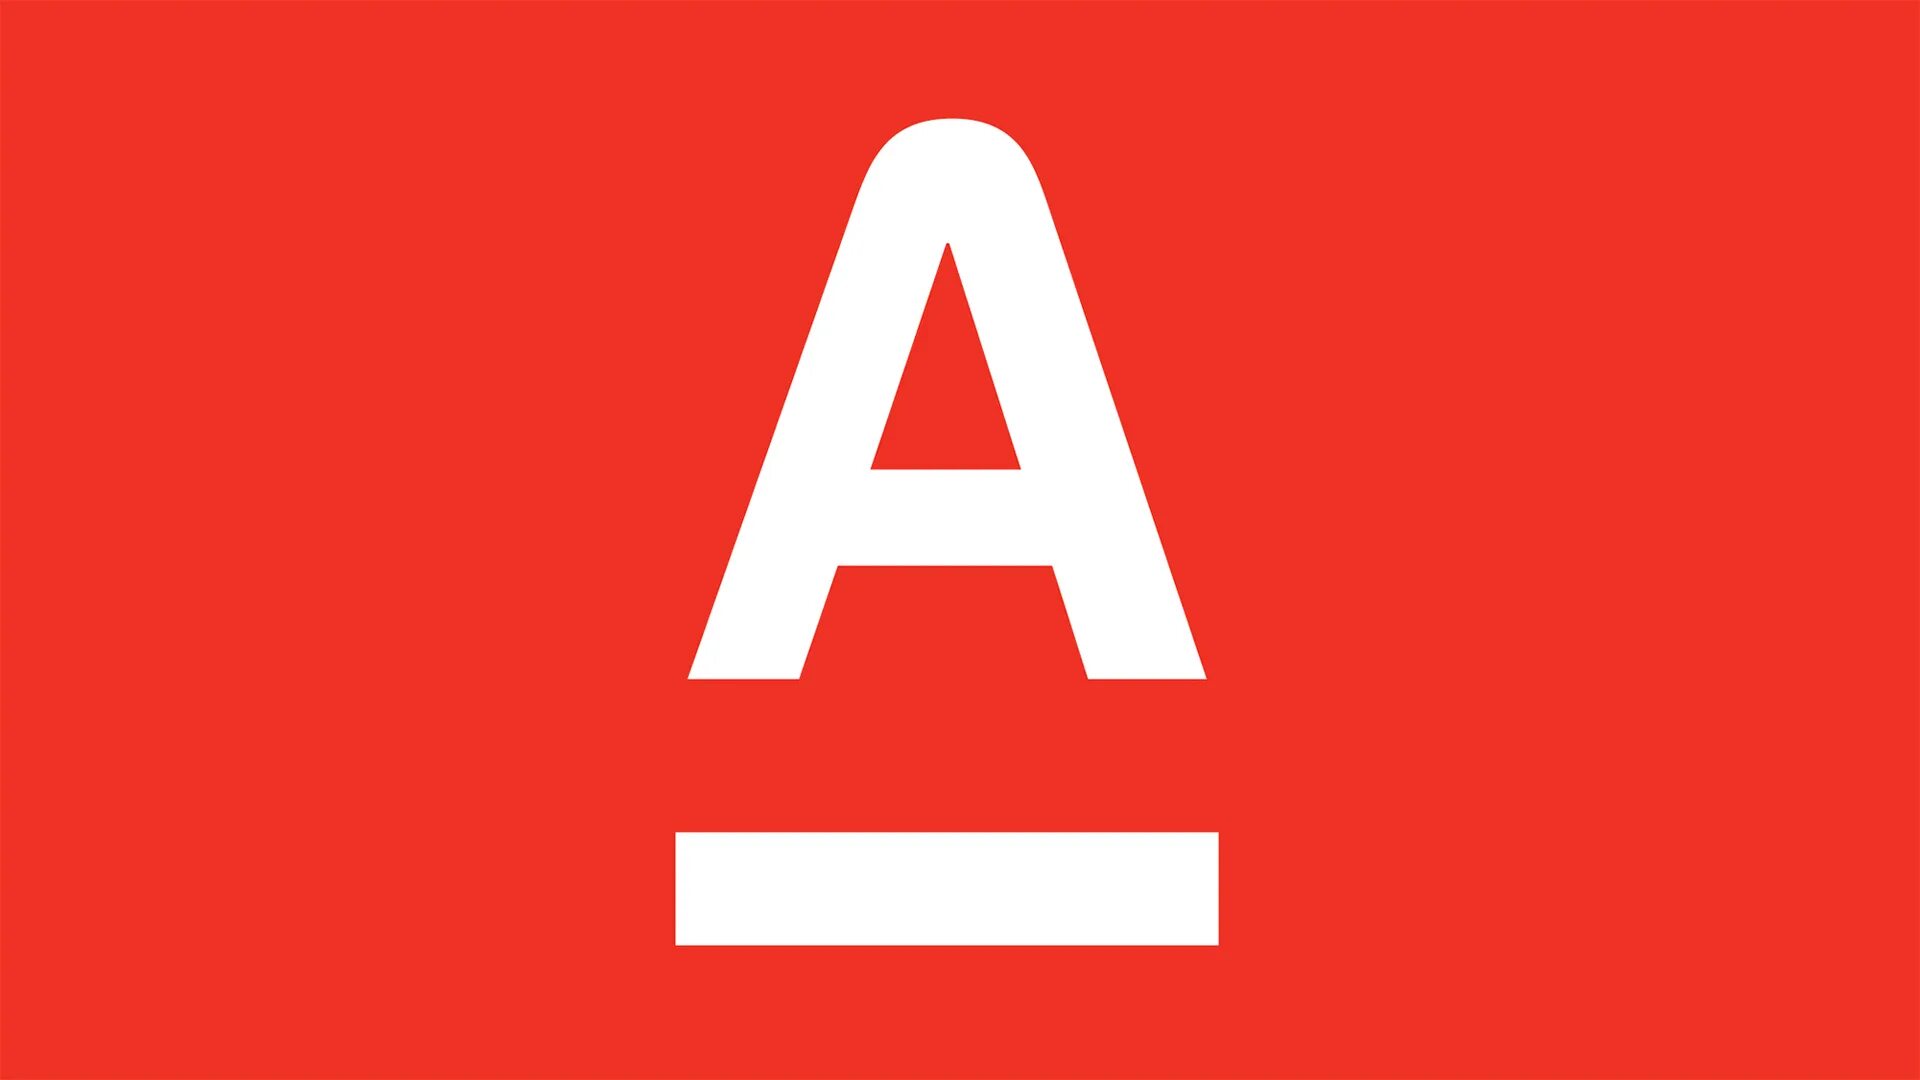 Альфа банк. Логотип Alfa Bank. Альфа банк лого вектор. Символ Альфа банка.